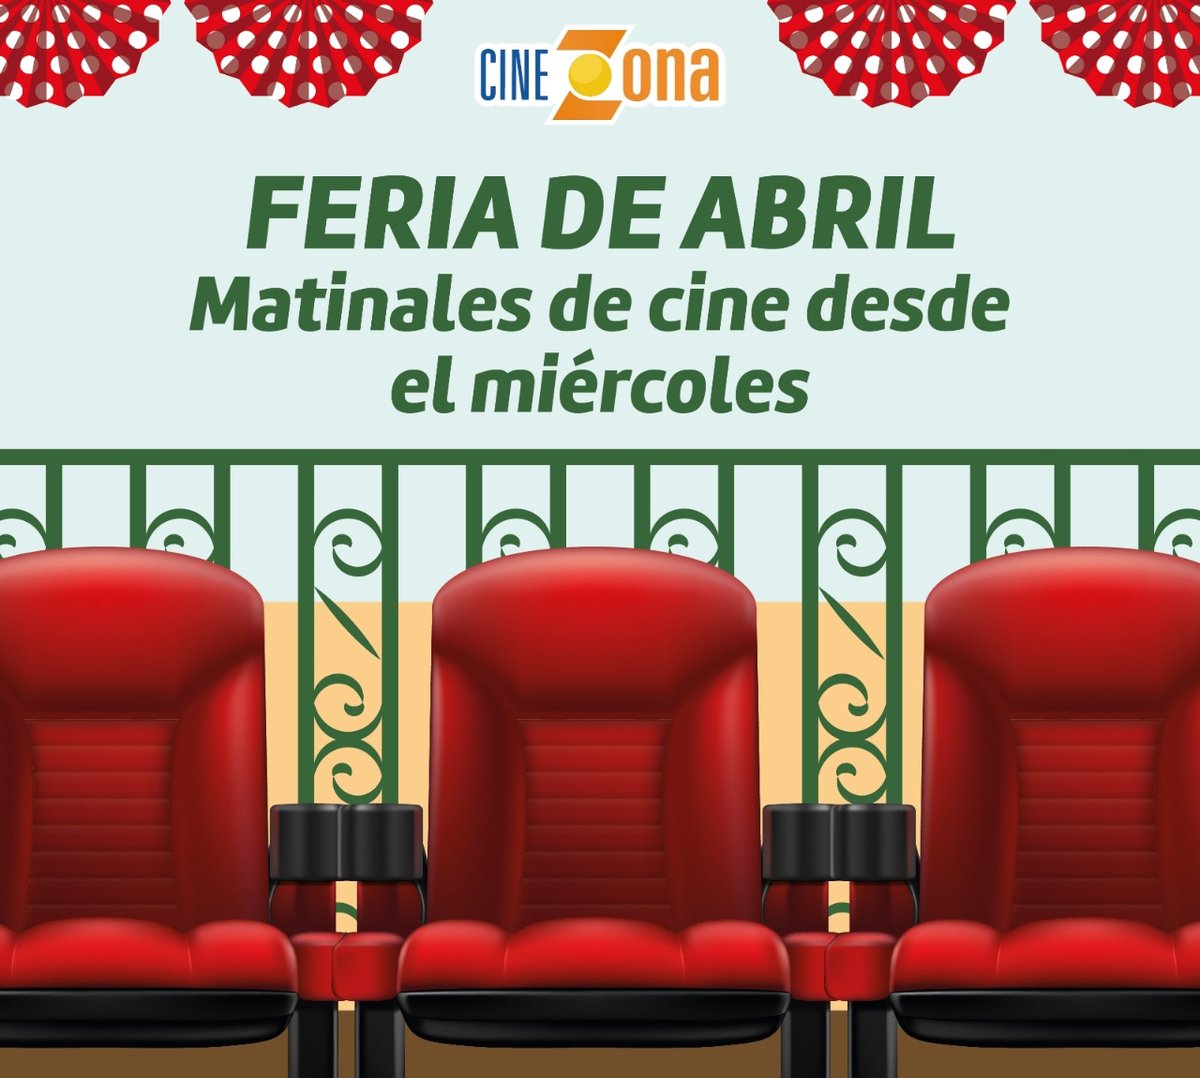 ¡Una Feria 💃🏻DE CINE🎬! 🍿Desde el miércoles 15 al domingo 21 de abil no te pierdas nuestras Sesiones Matinales de #CineZona 🍿 🎟️ cczonaeste.com #feria #sesionesmatinales #cine #peliculas #feriadesevilla #sevilla #sevillaeste